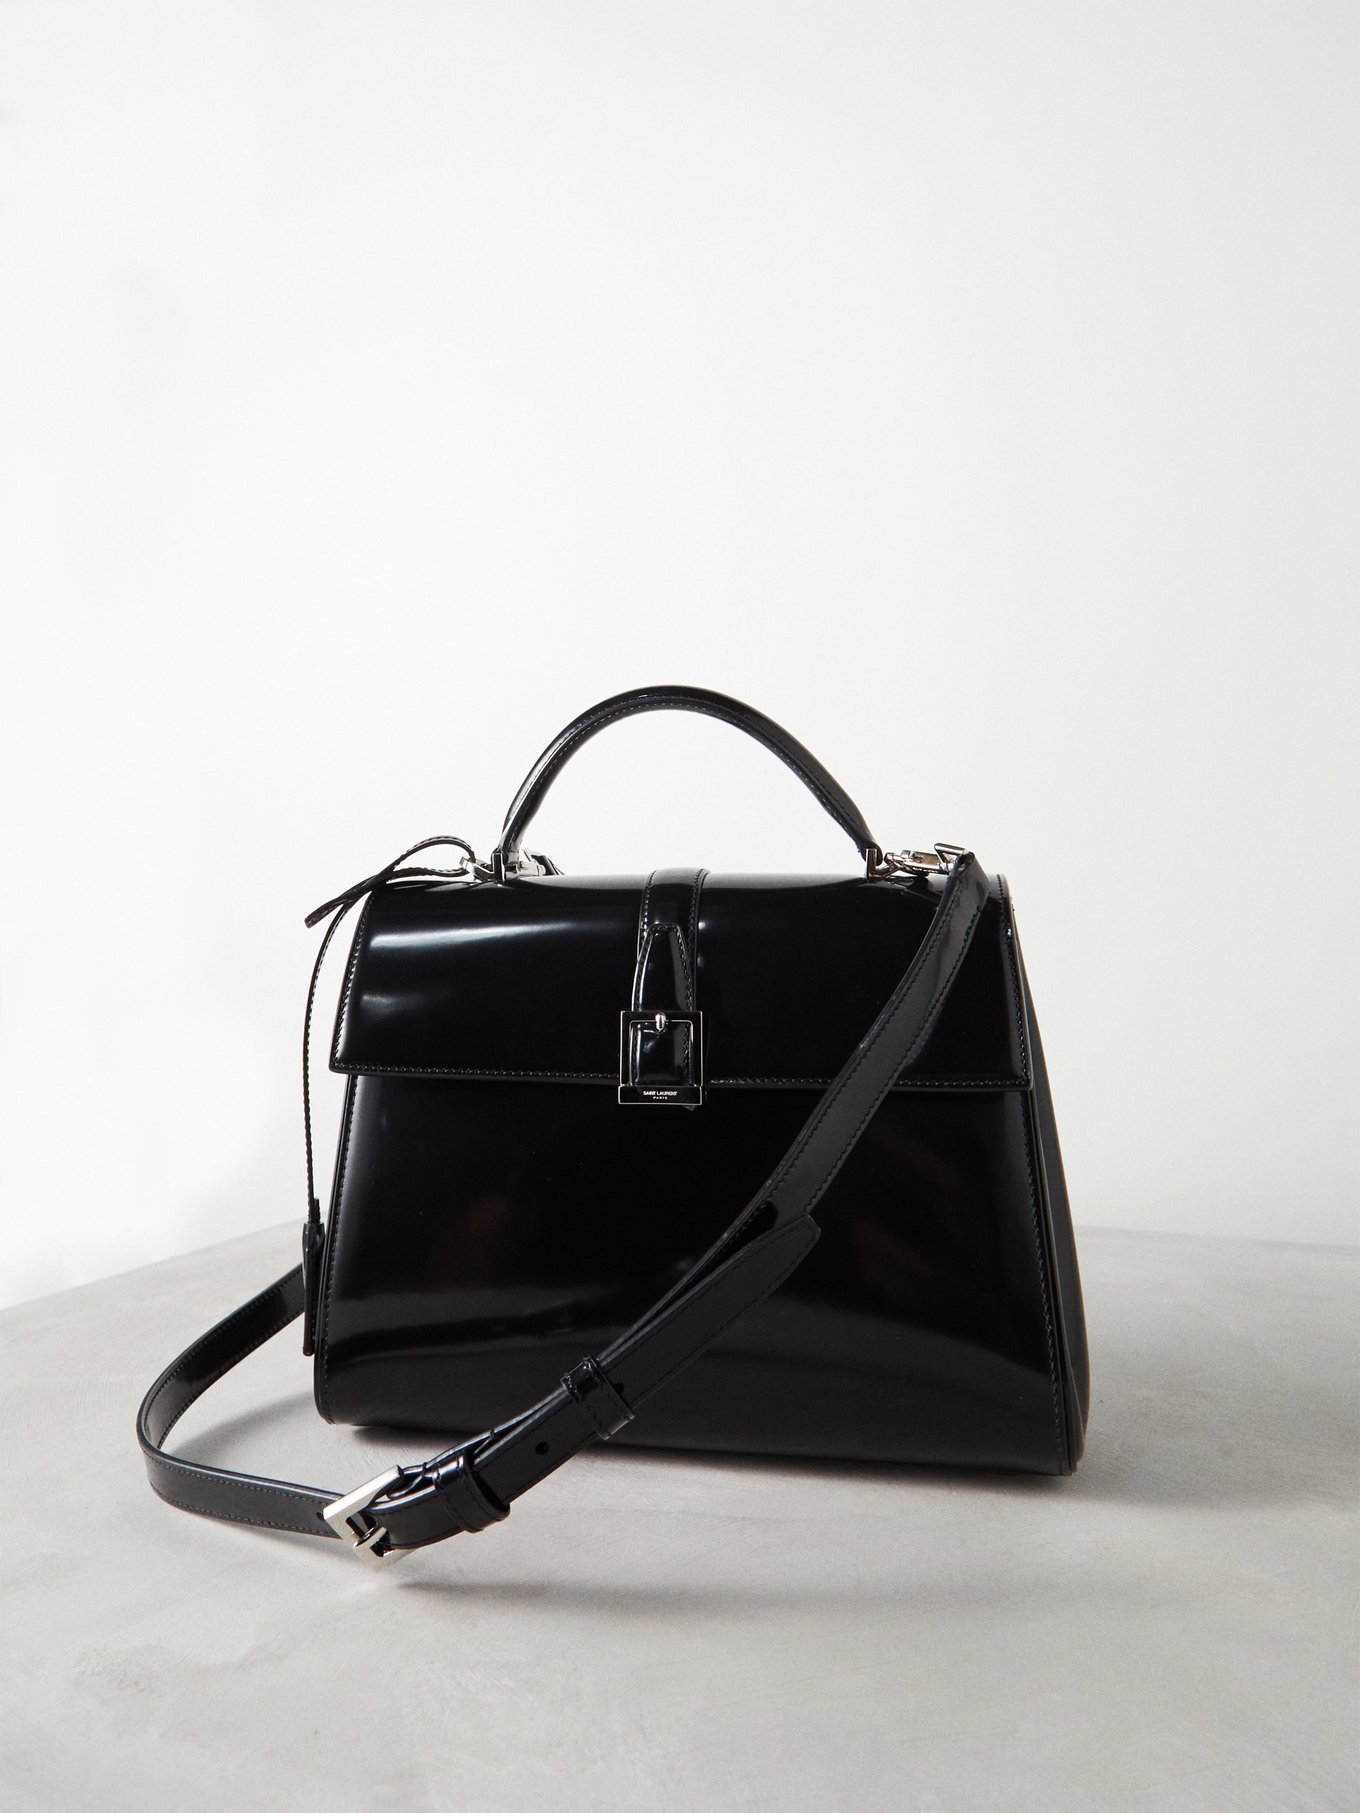 Saint Laurent Le Fermoir Top Handle Bag in Black